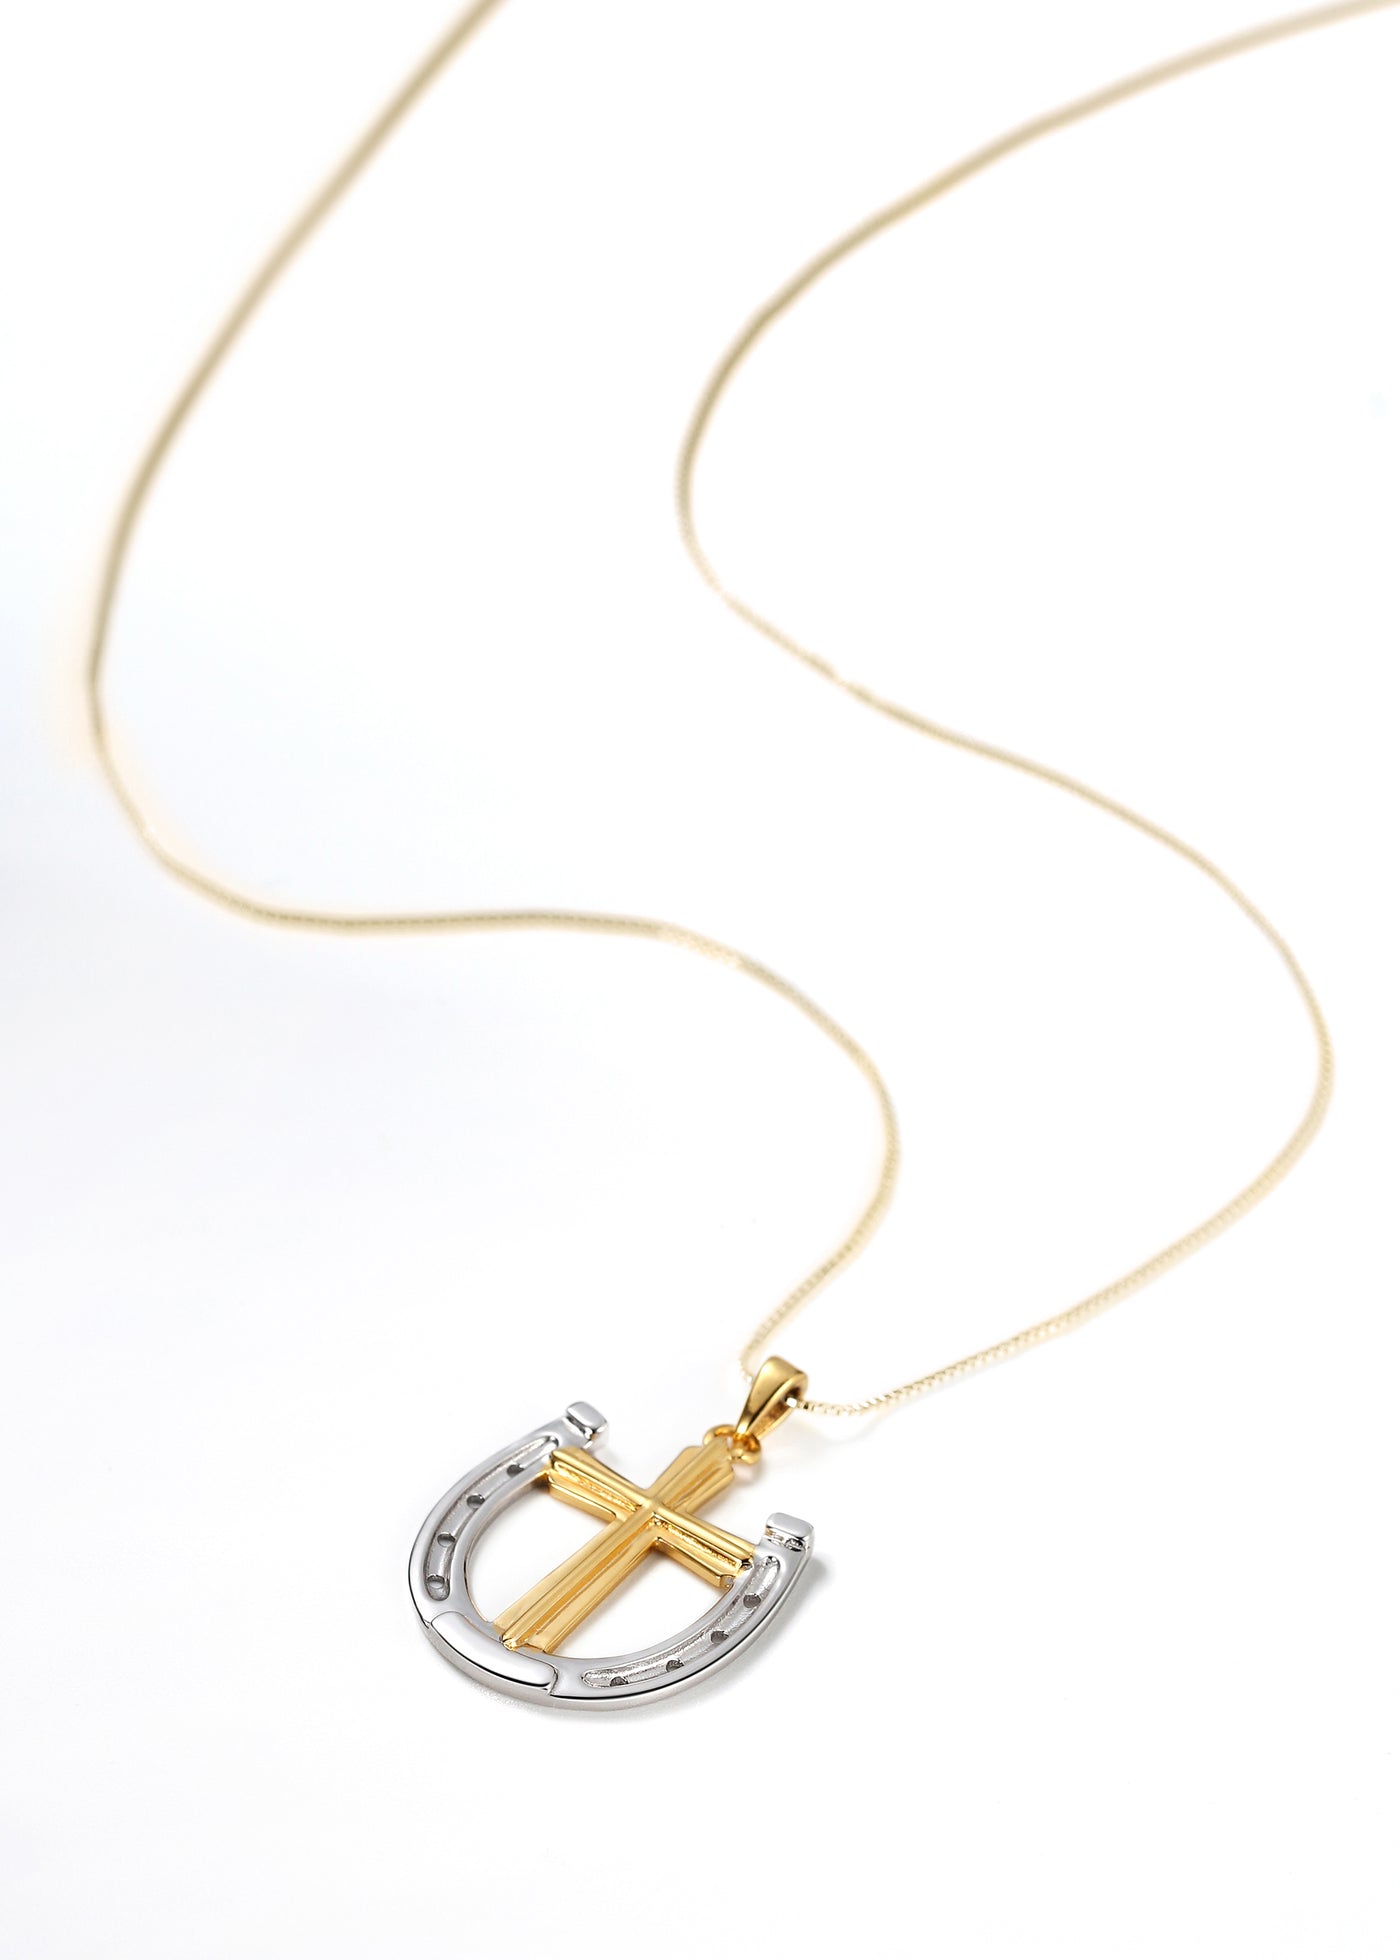 Dark Horse Rider's Prayer Necklace on Gold Box Chain